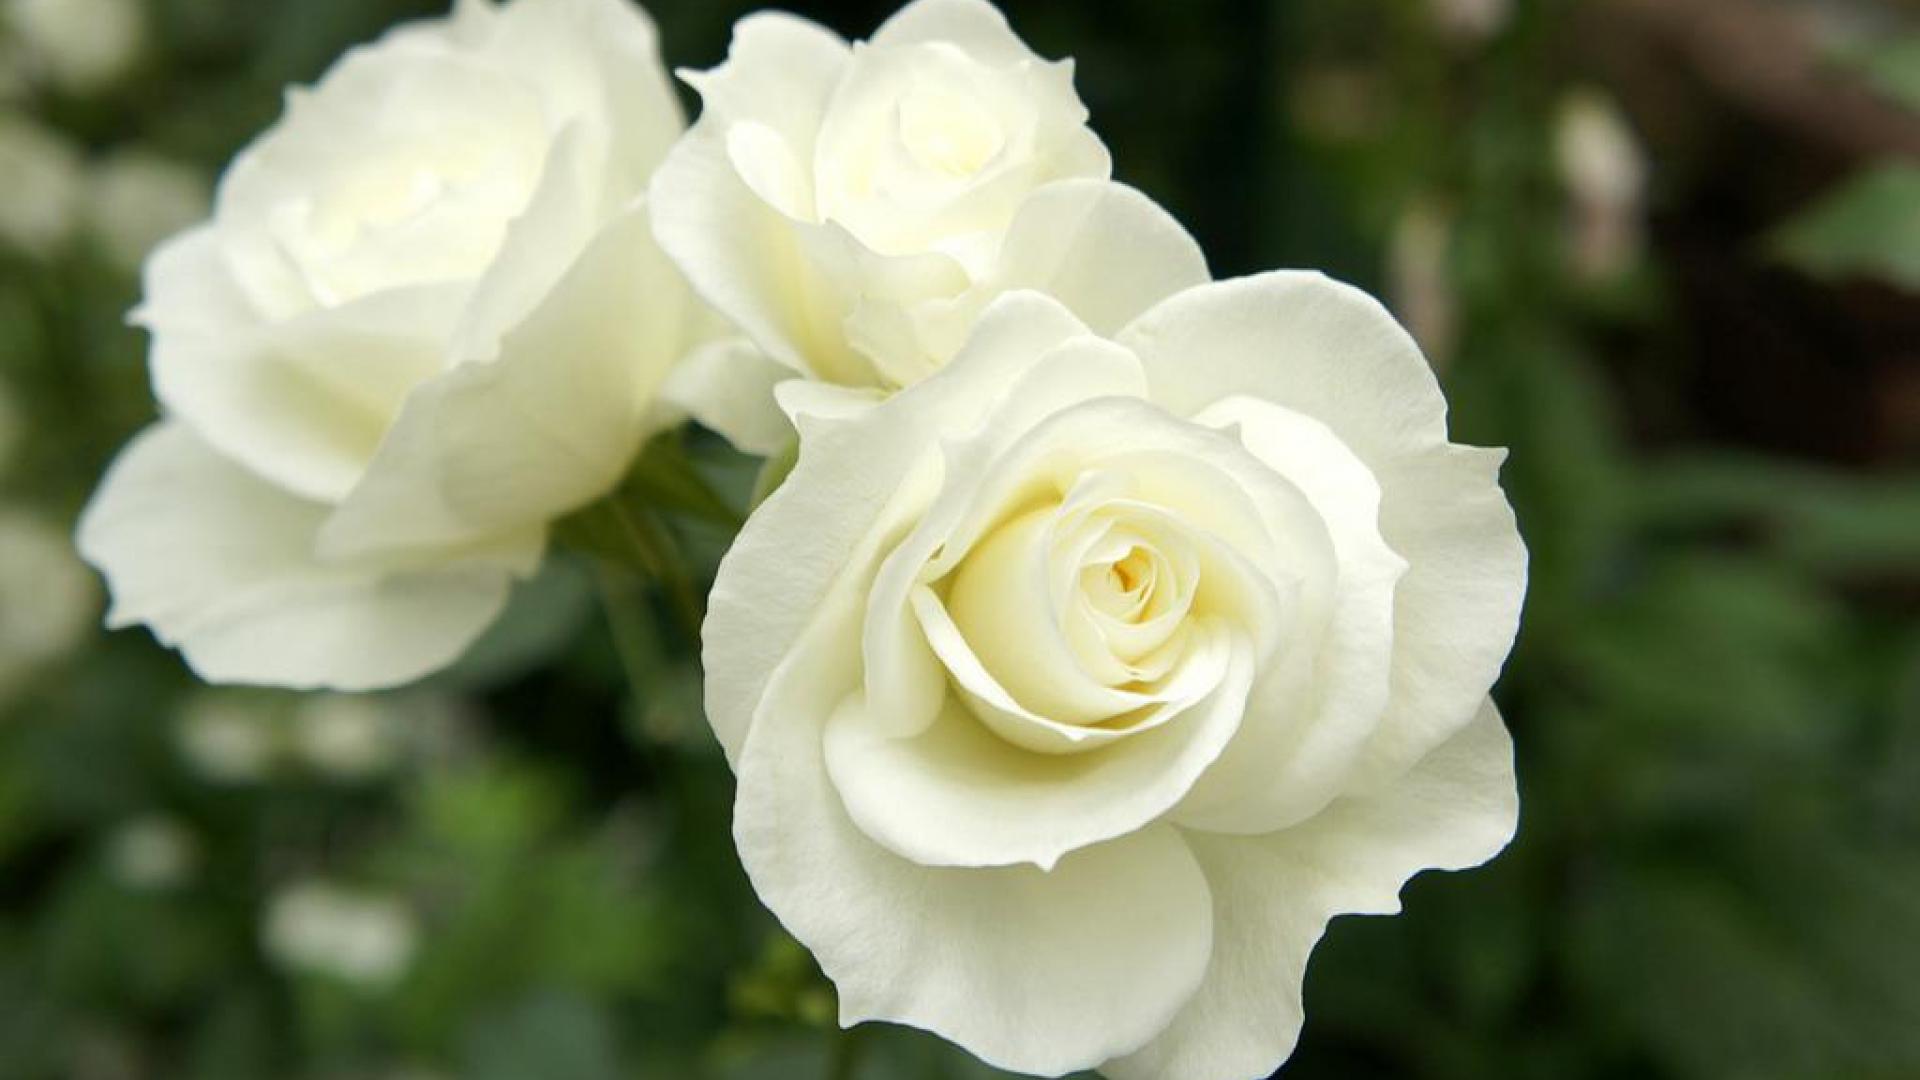 bellissimo sfondo bianco,fiore,pianta fiorita,julia child rose,bianca,rosa